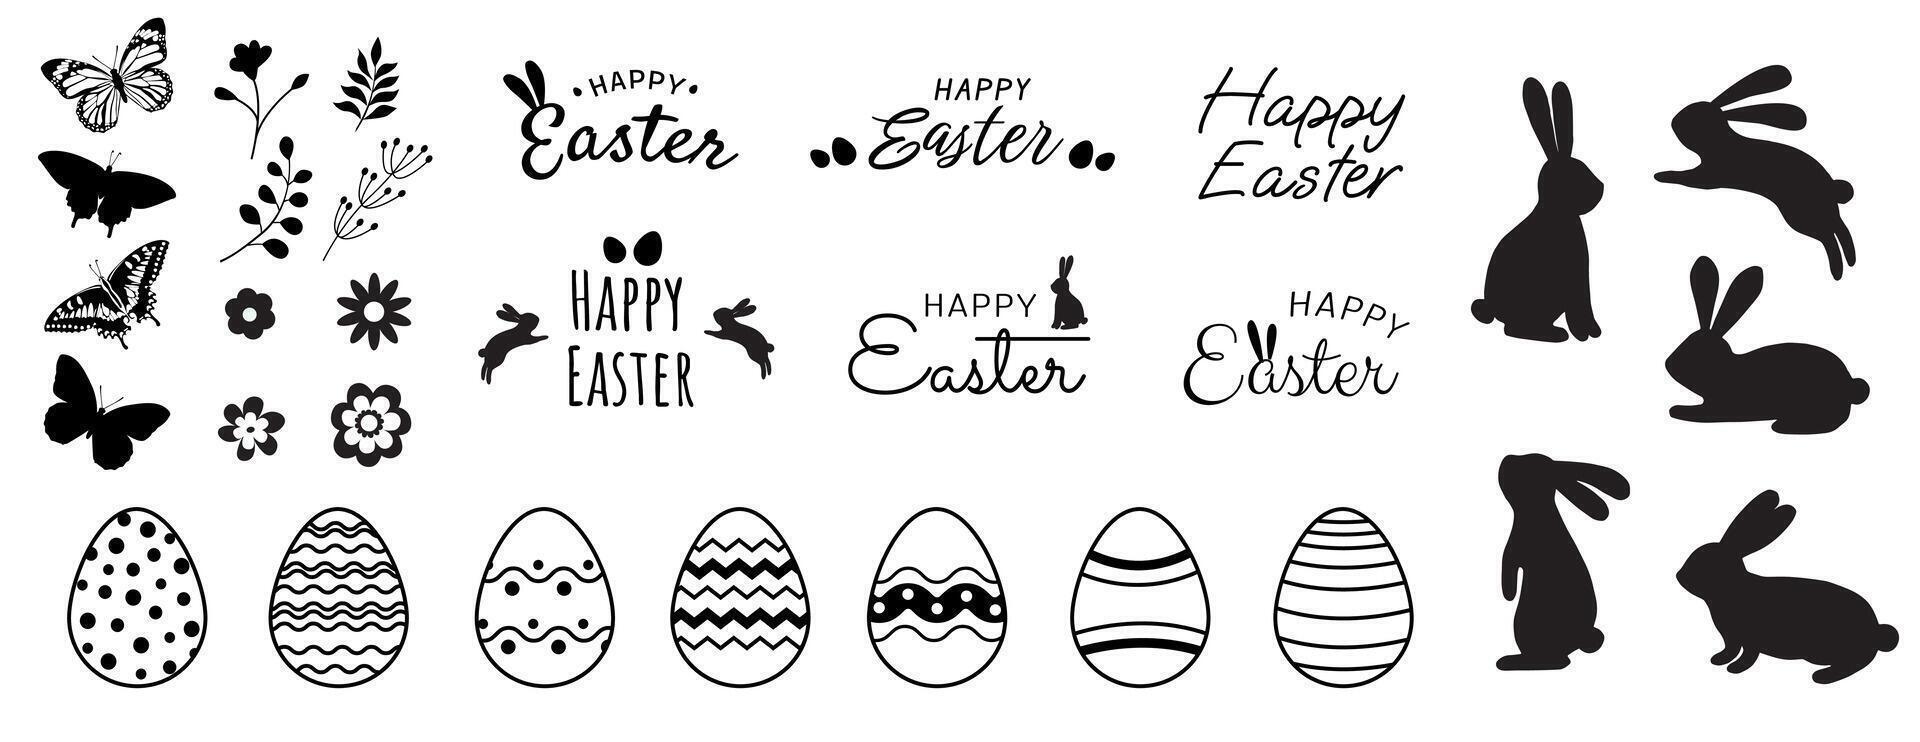 groot vector Pasen verzameling van elementen voor divers ontwerpen. de verzameling bevat konijn silhouetten, gemakkelijk bloemen, Pasen belettering en eieren met grafisch patronen.